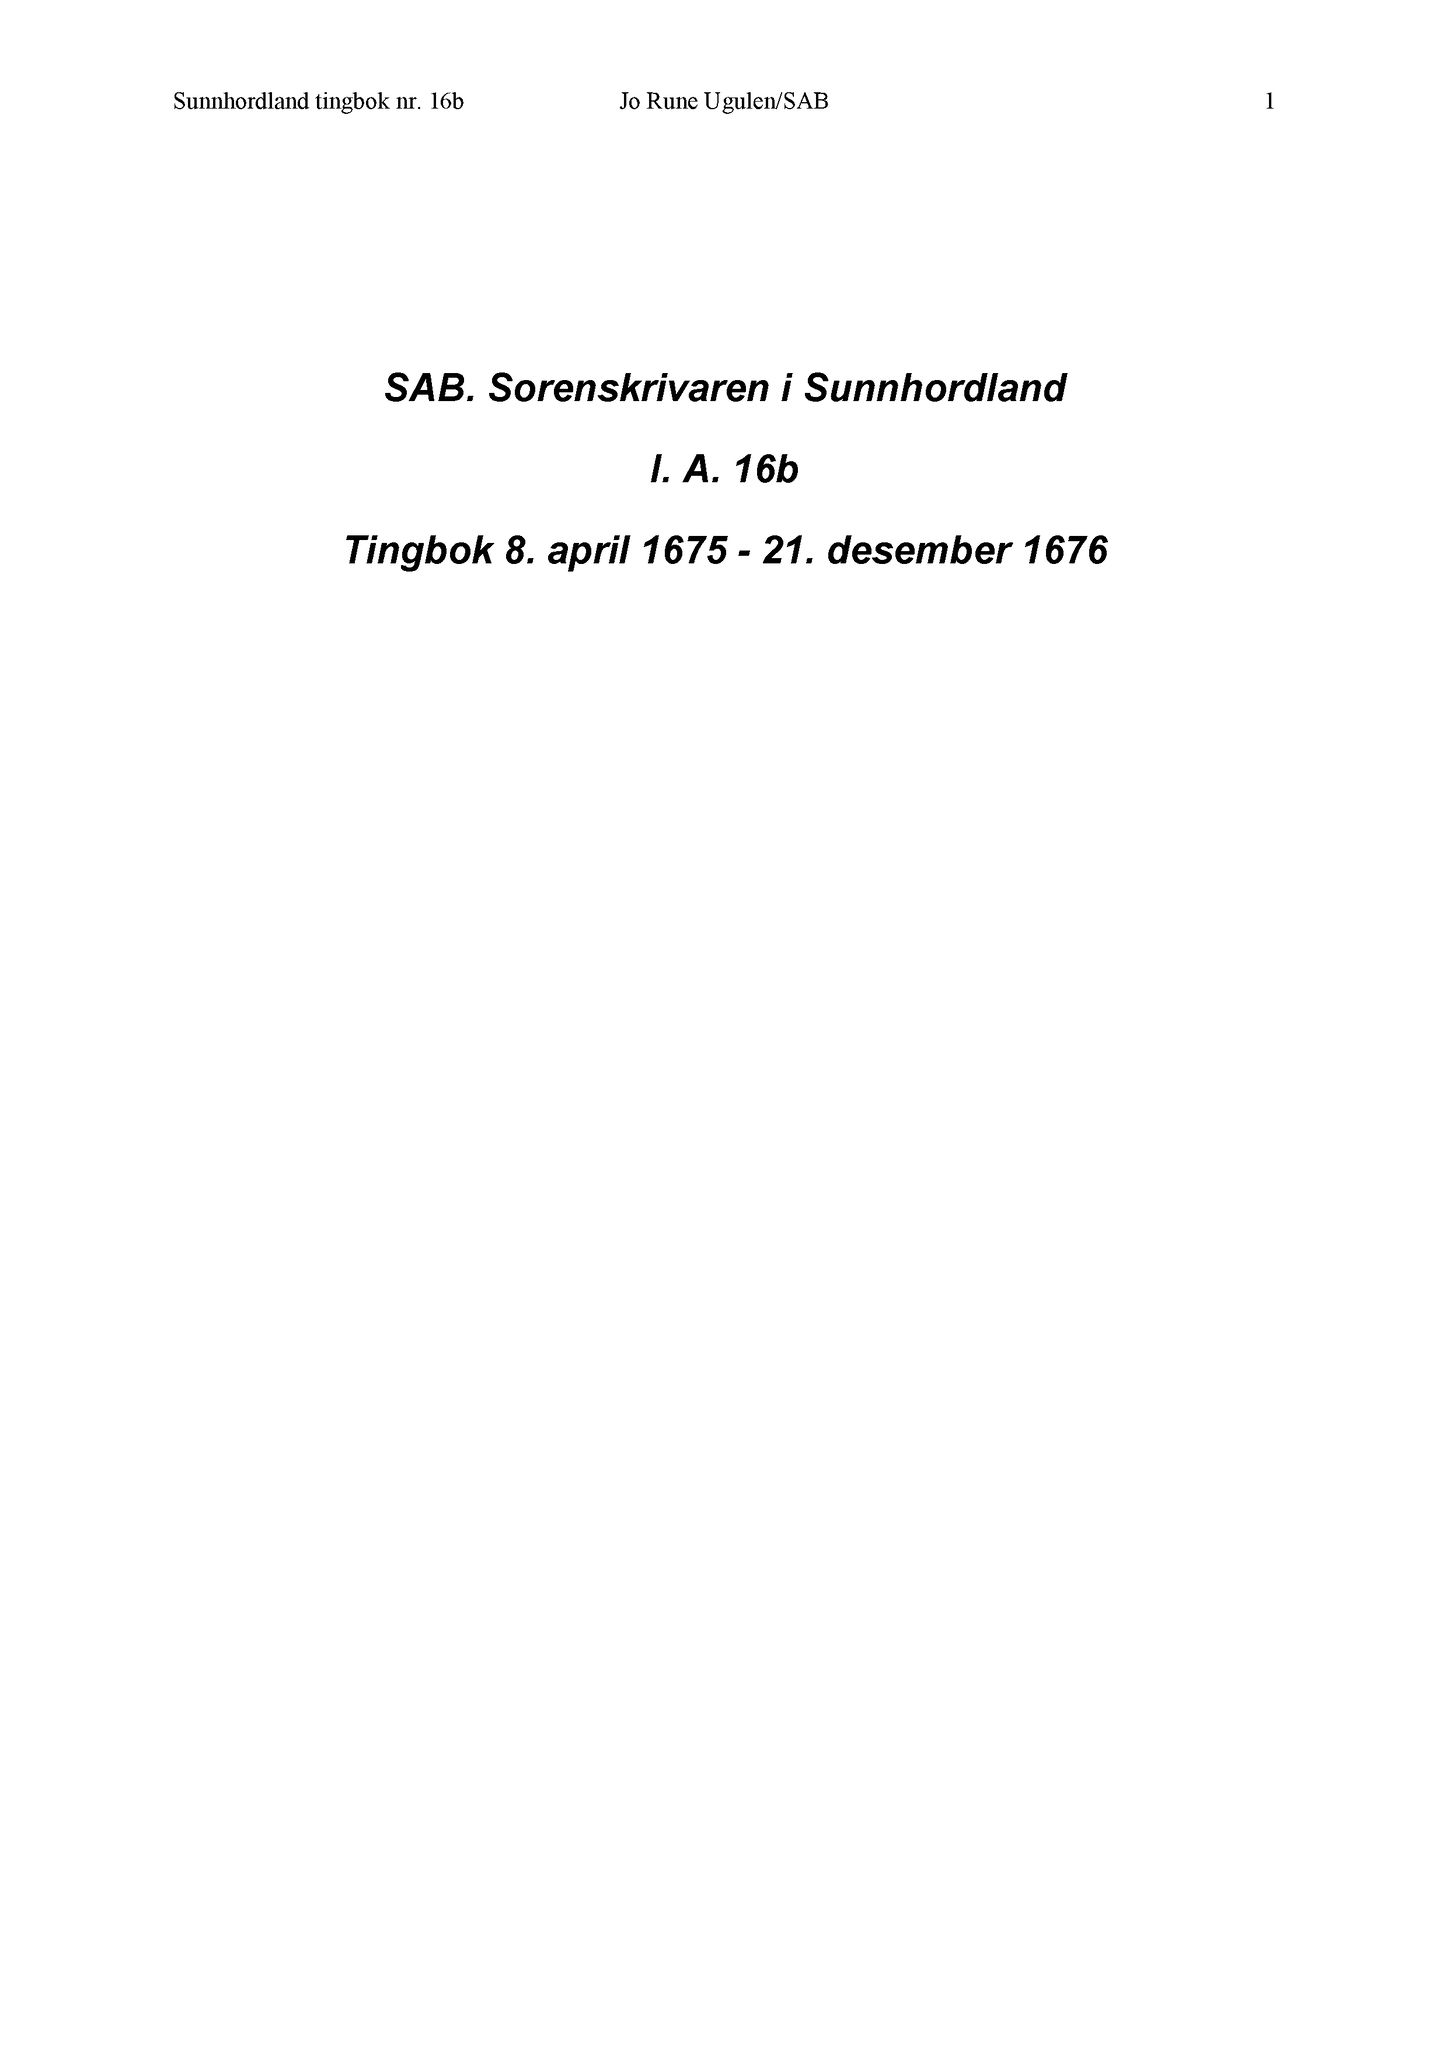 Samling av fulltekstavskrifter, SAB/FULLTEKST/A/12/0017: Sunnhordland sorenskriveri, tingbok nr. A 16b, 1675-1676